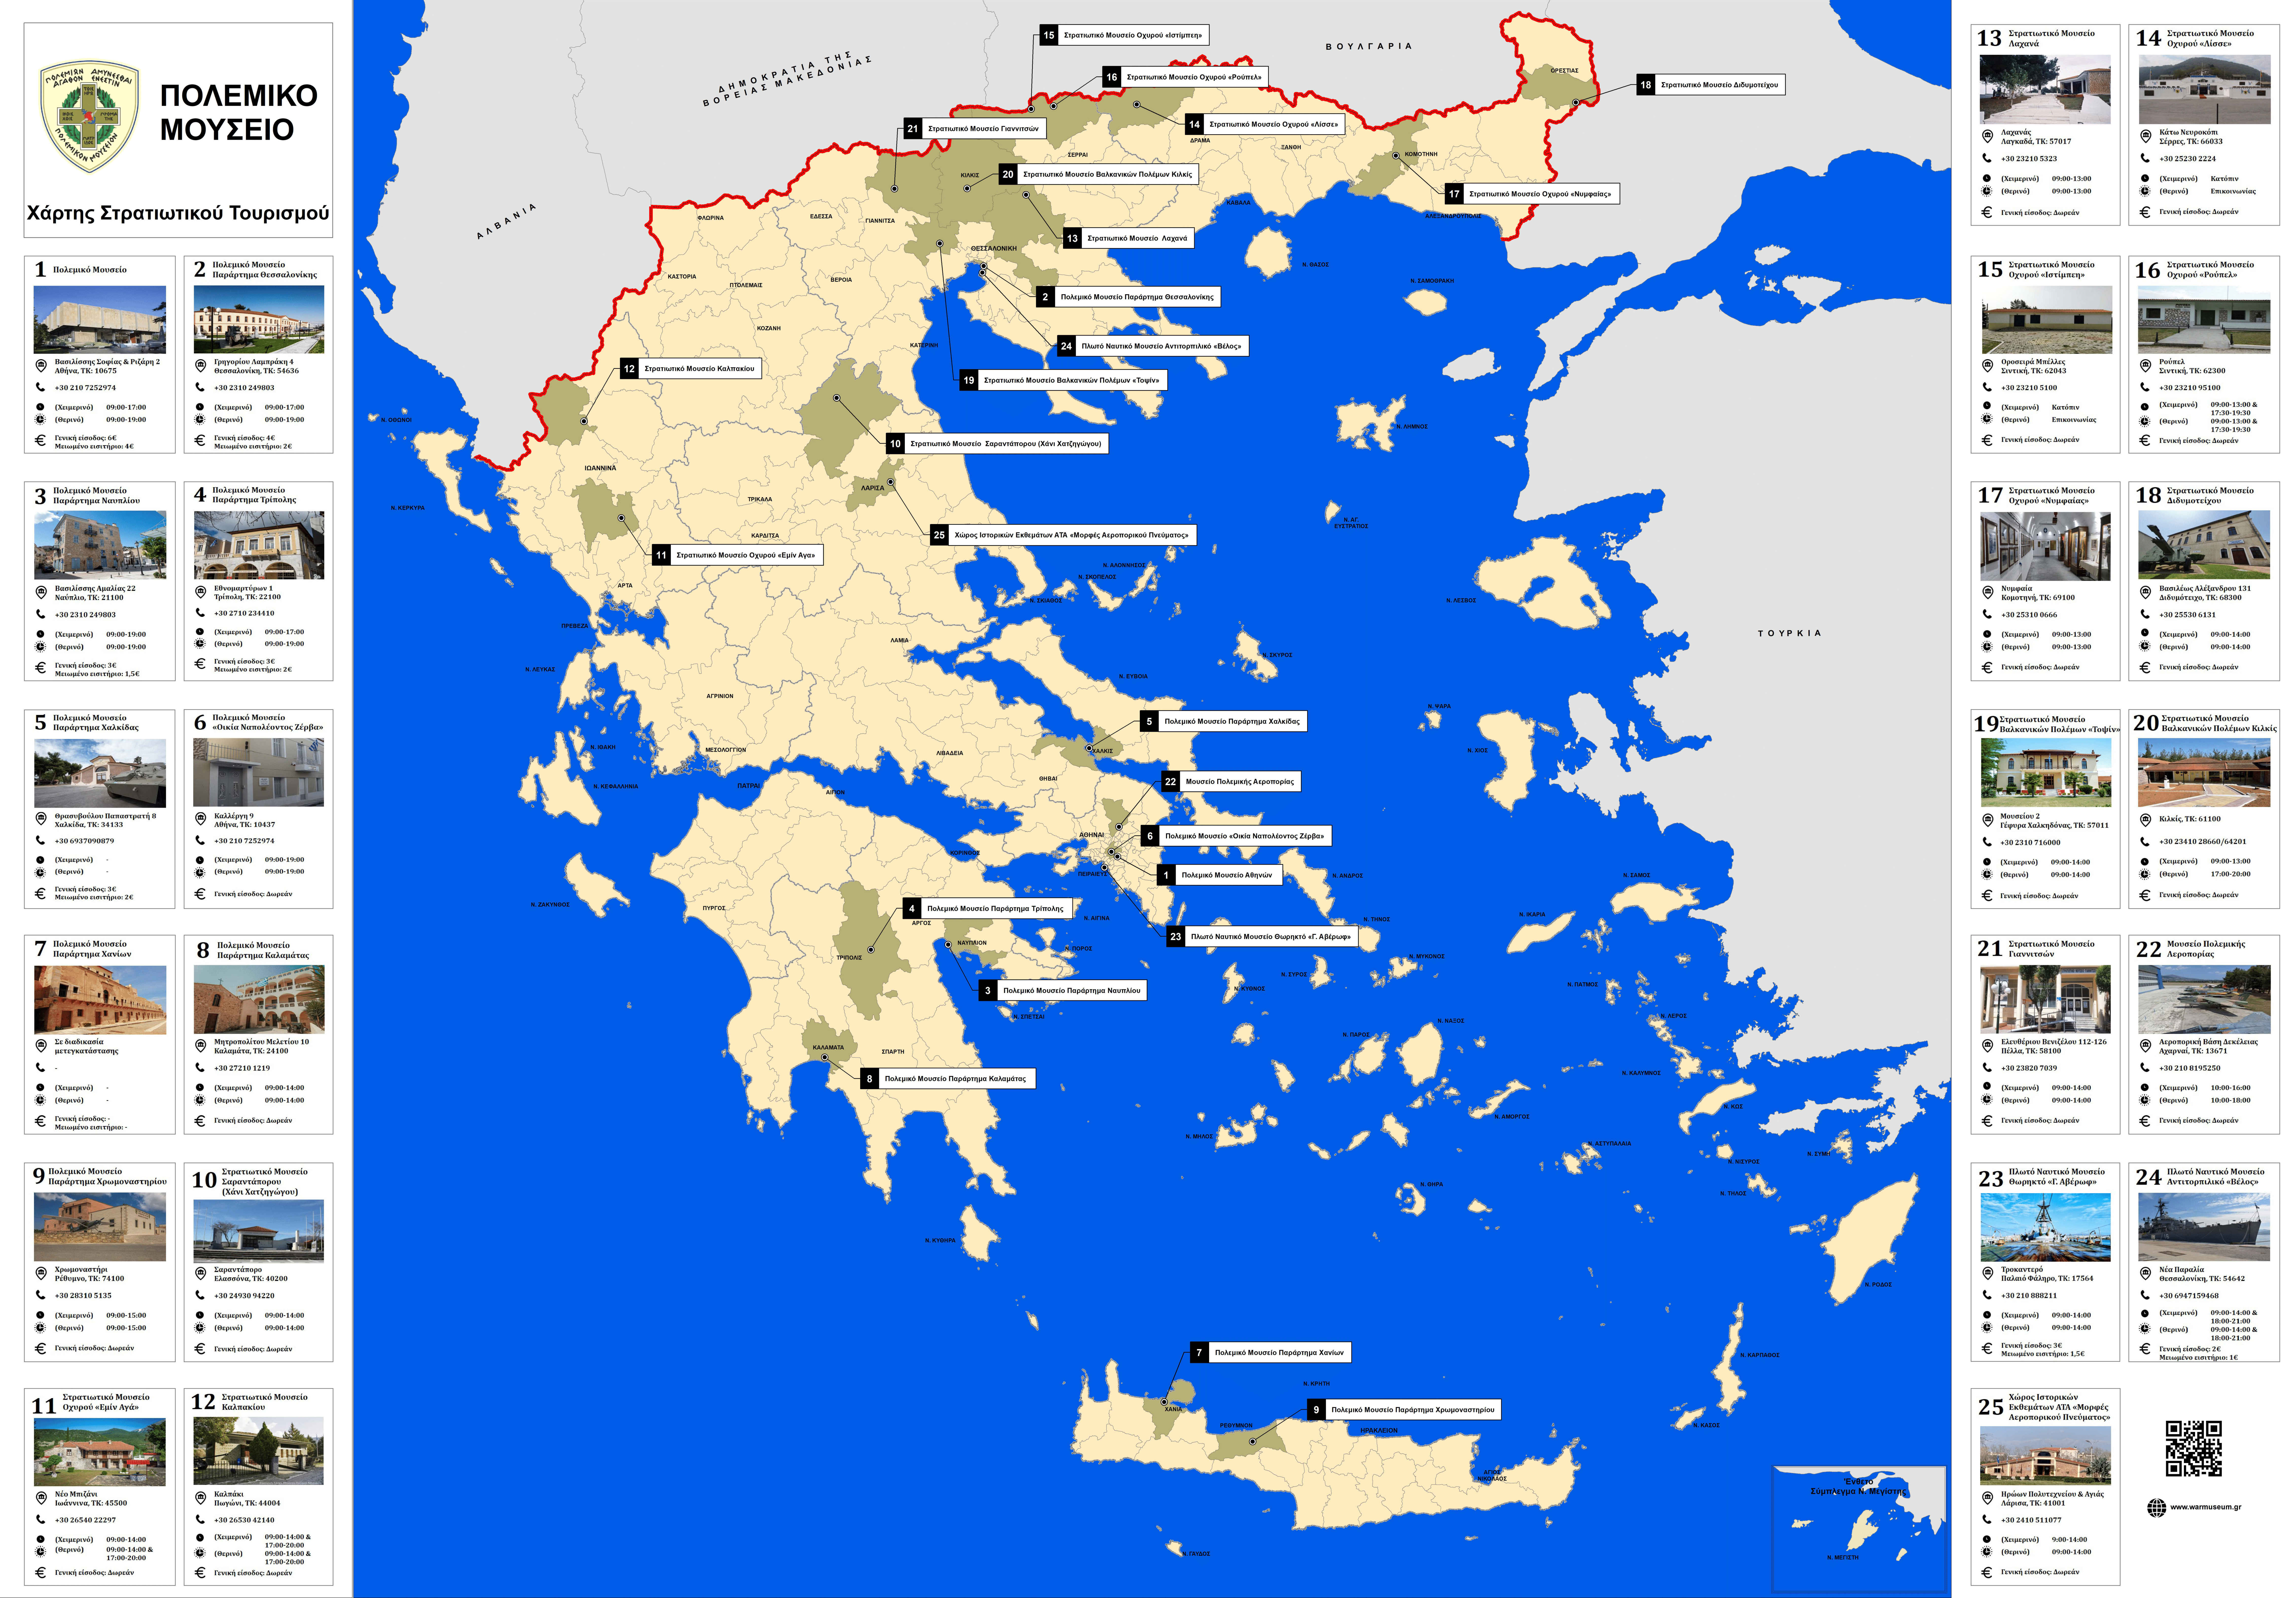 Χάρτης Πολεμικών Μουσείων της Χώρας